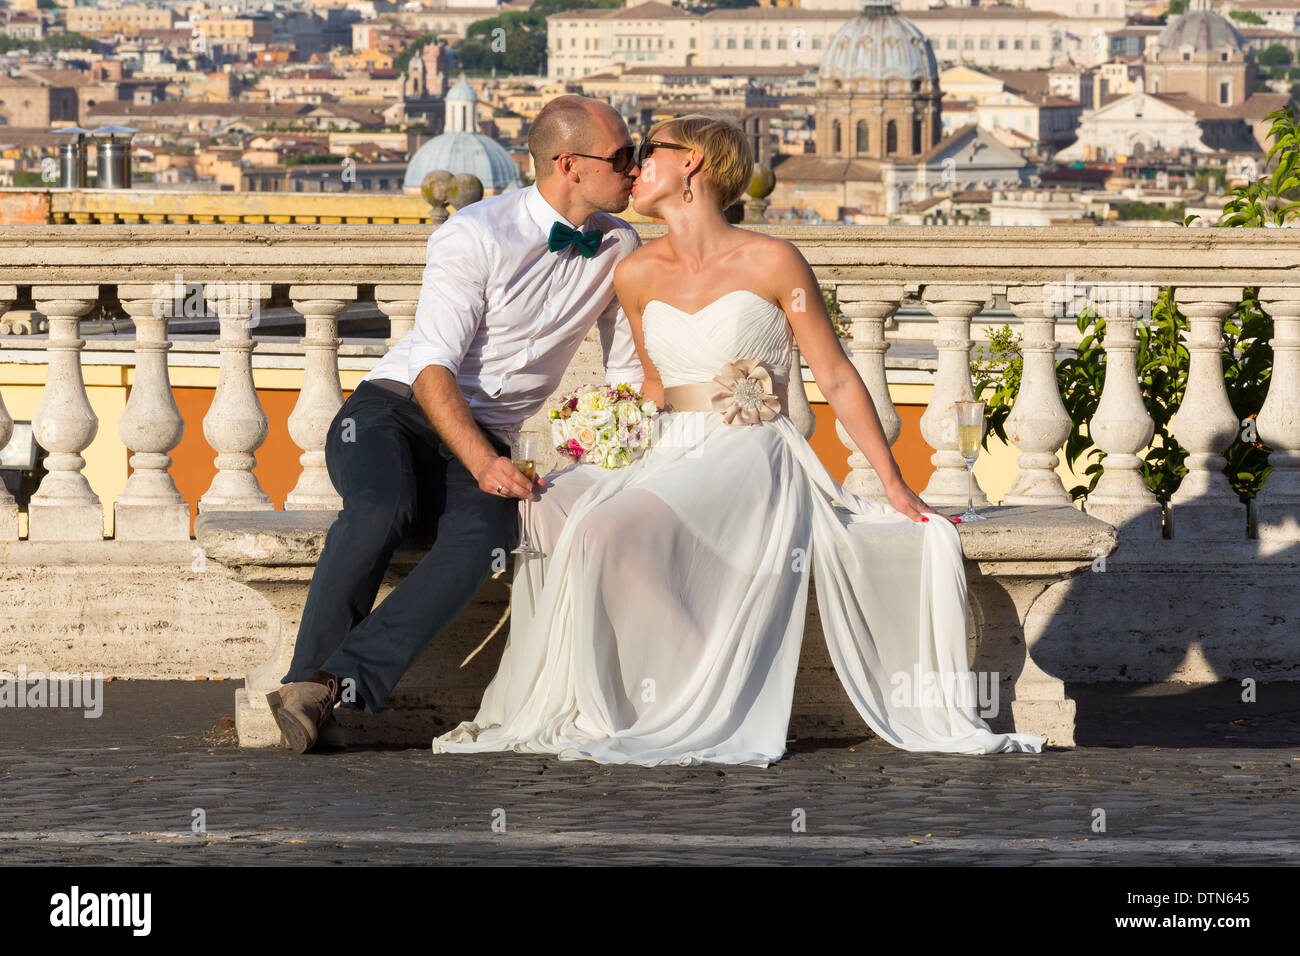 Sposi novelli kissing oltre i tetti romani Foto Stock